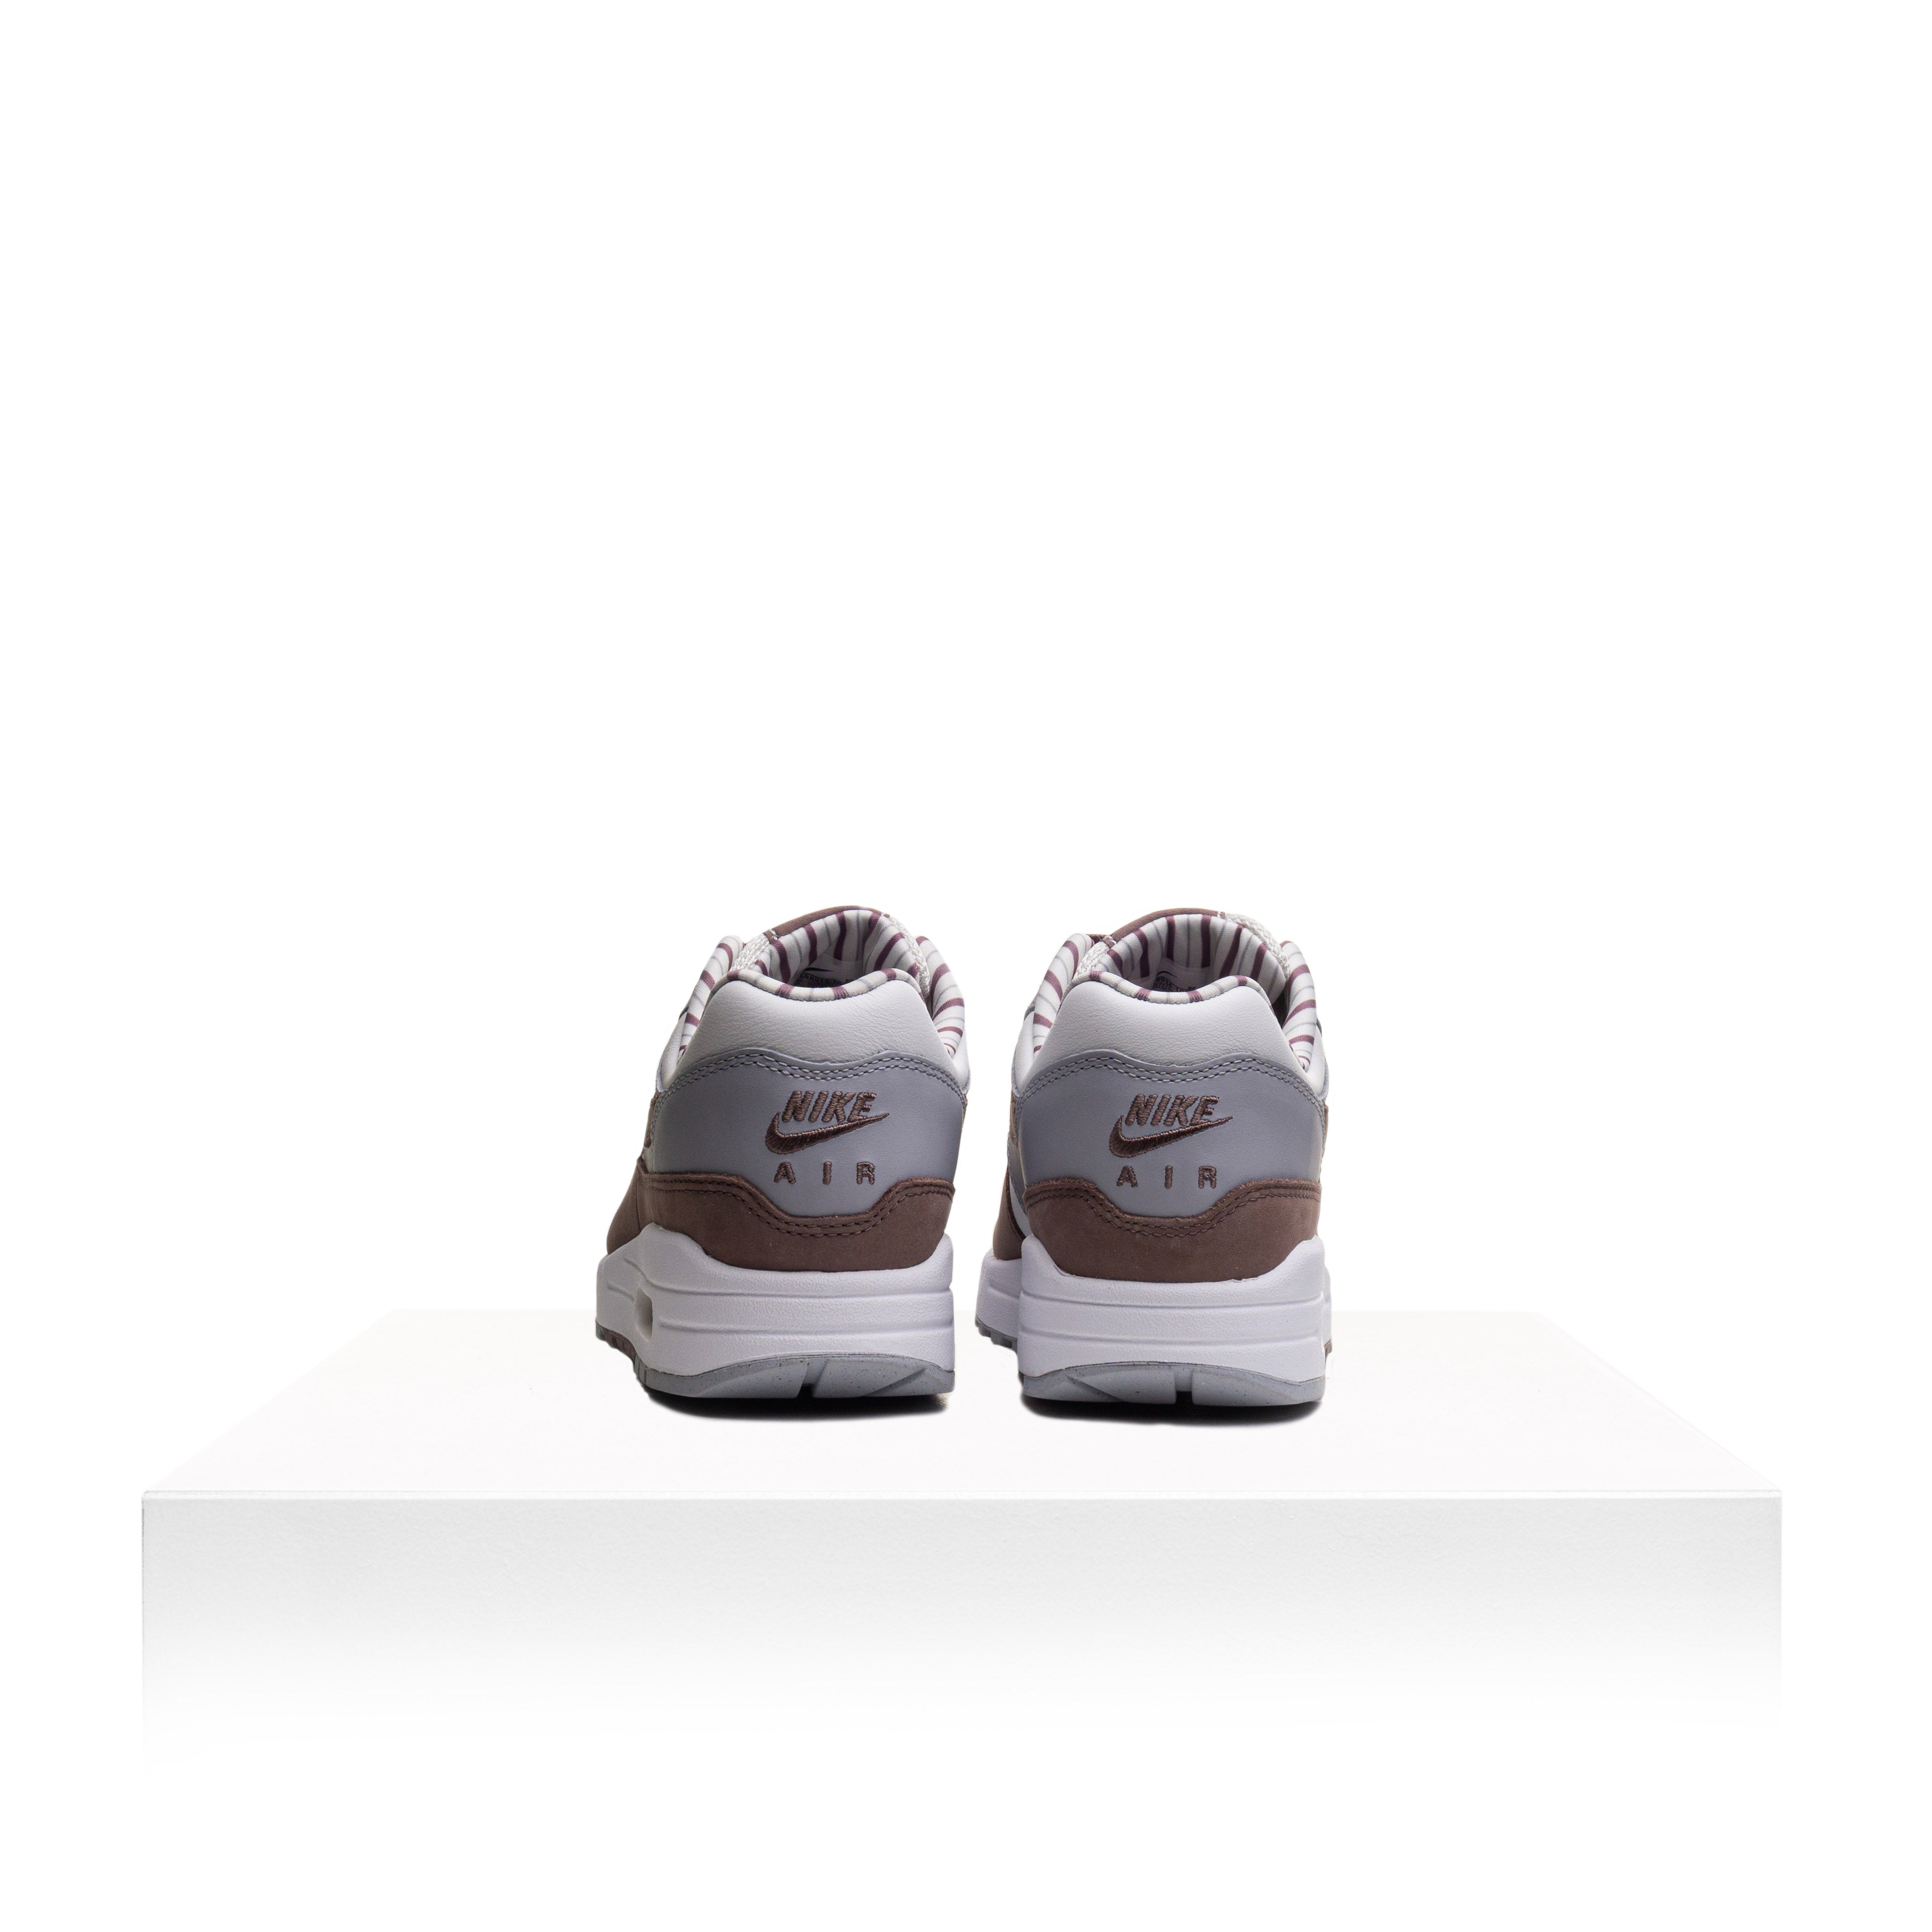 Nike Air Max 1 PRM "Shima Shima" image